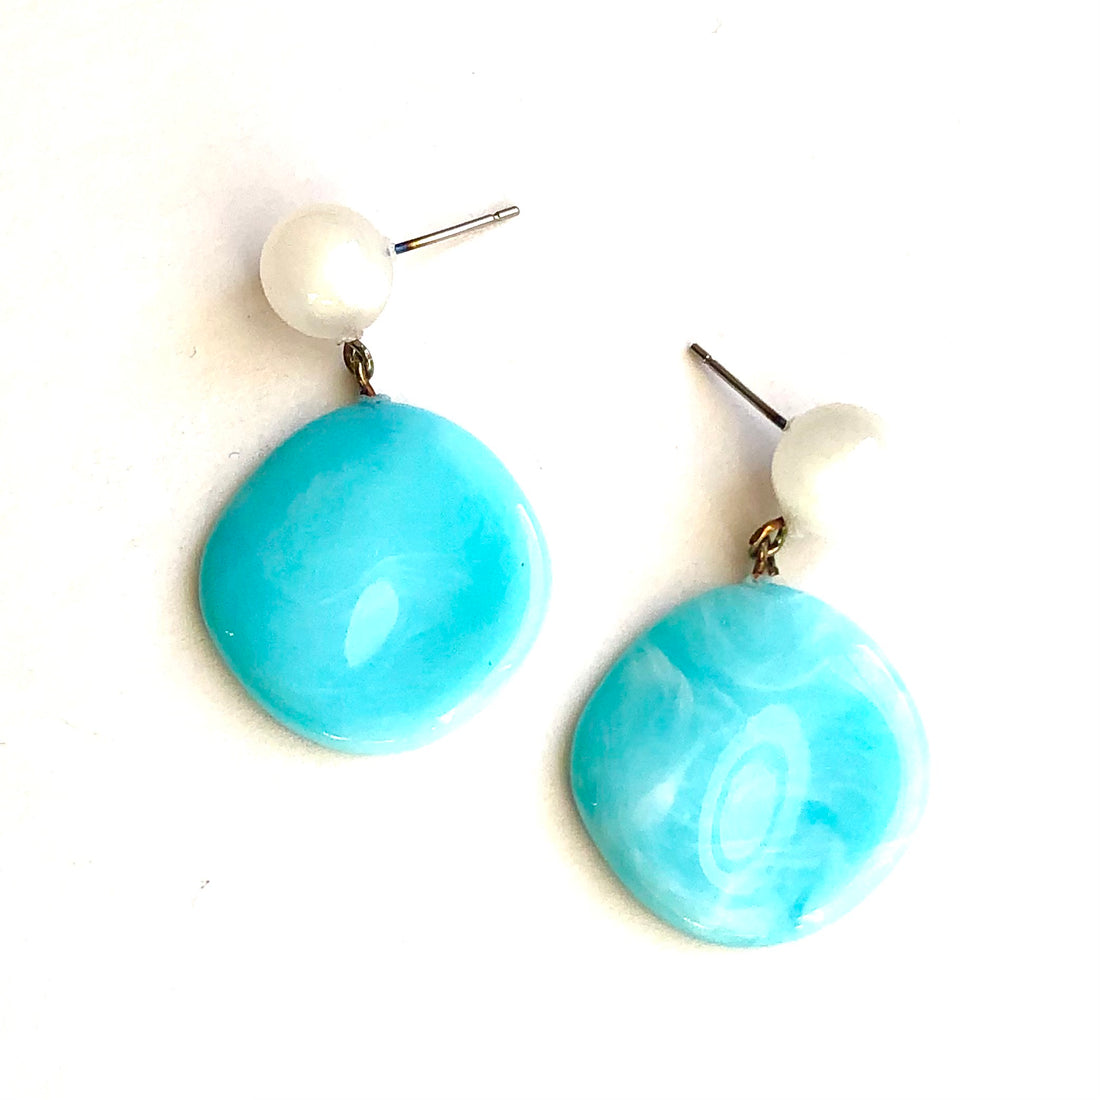 light blue earrings